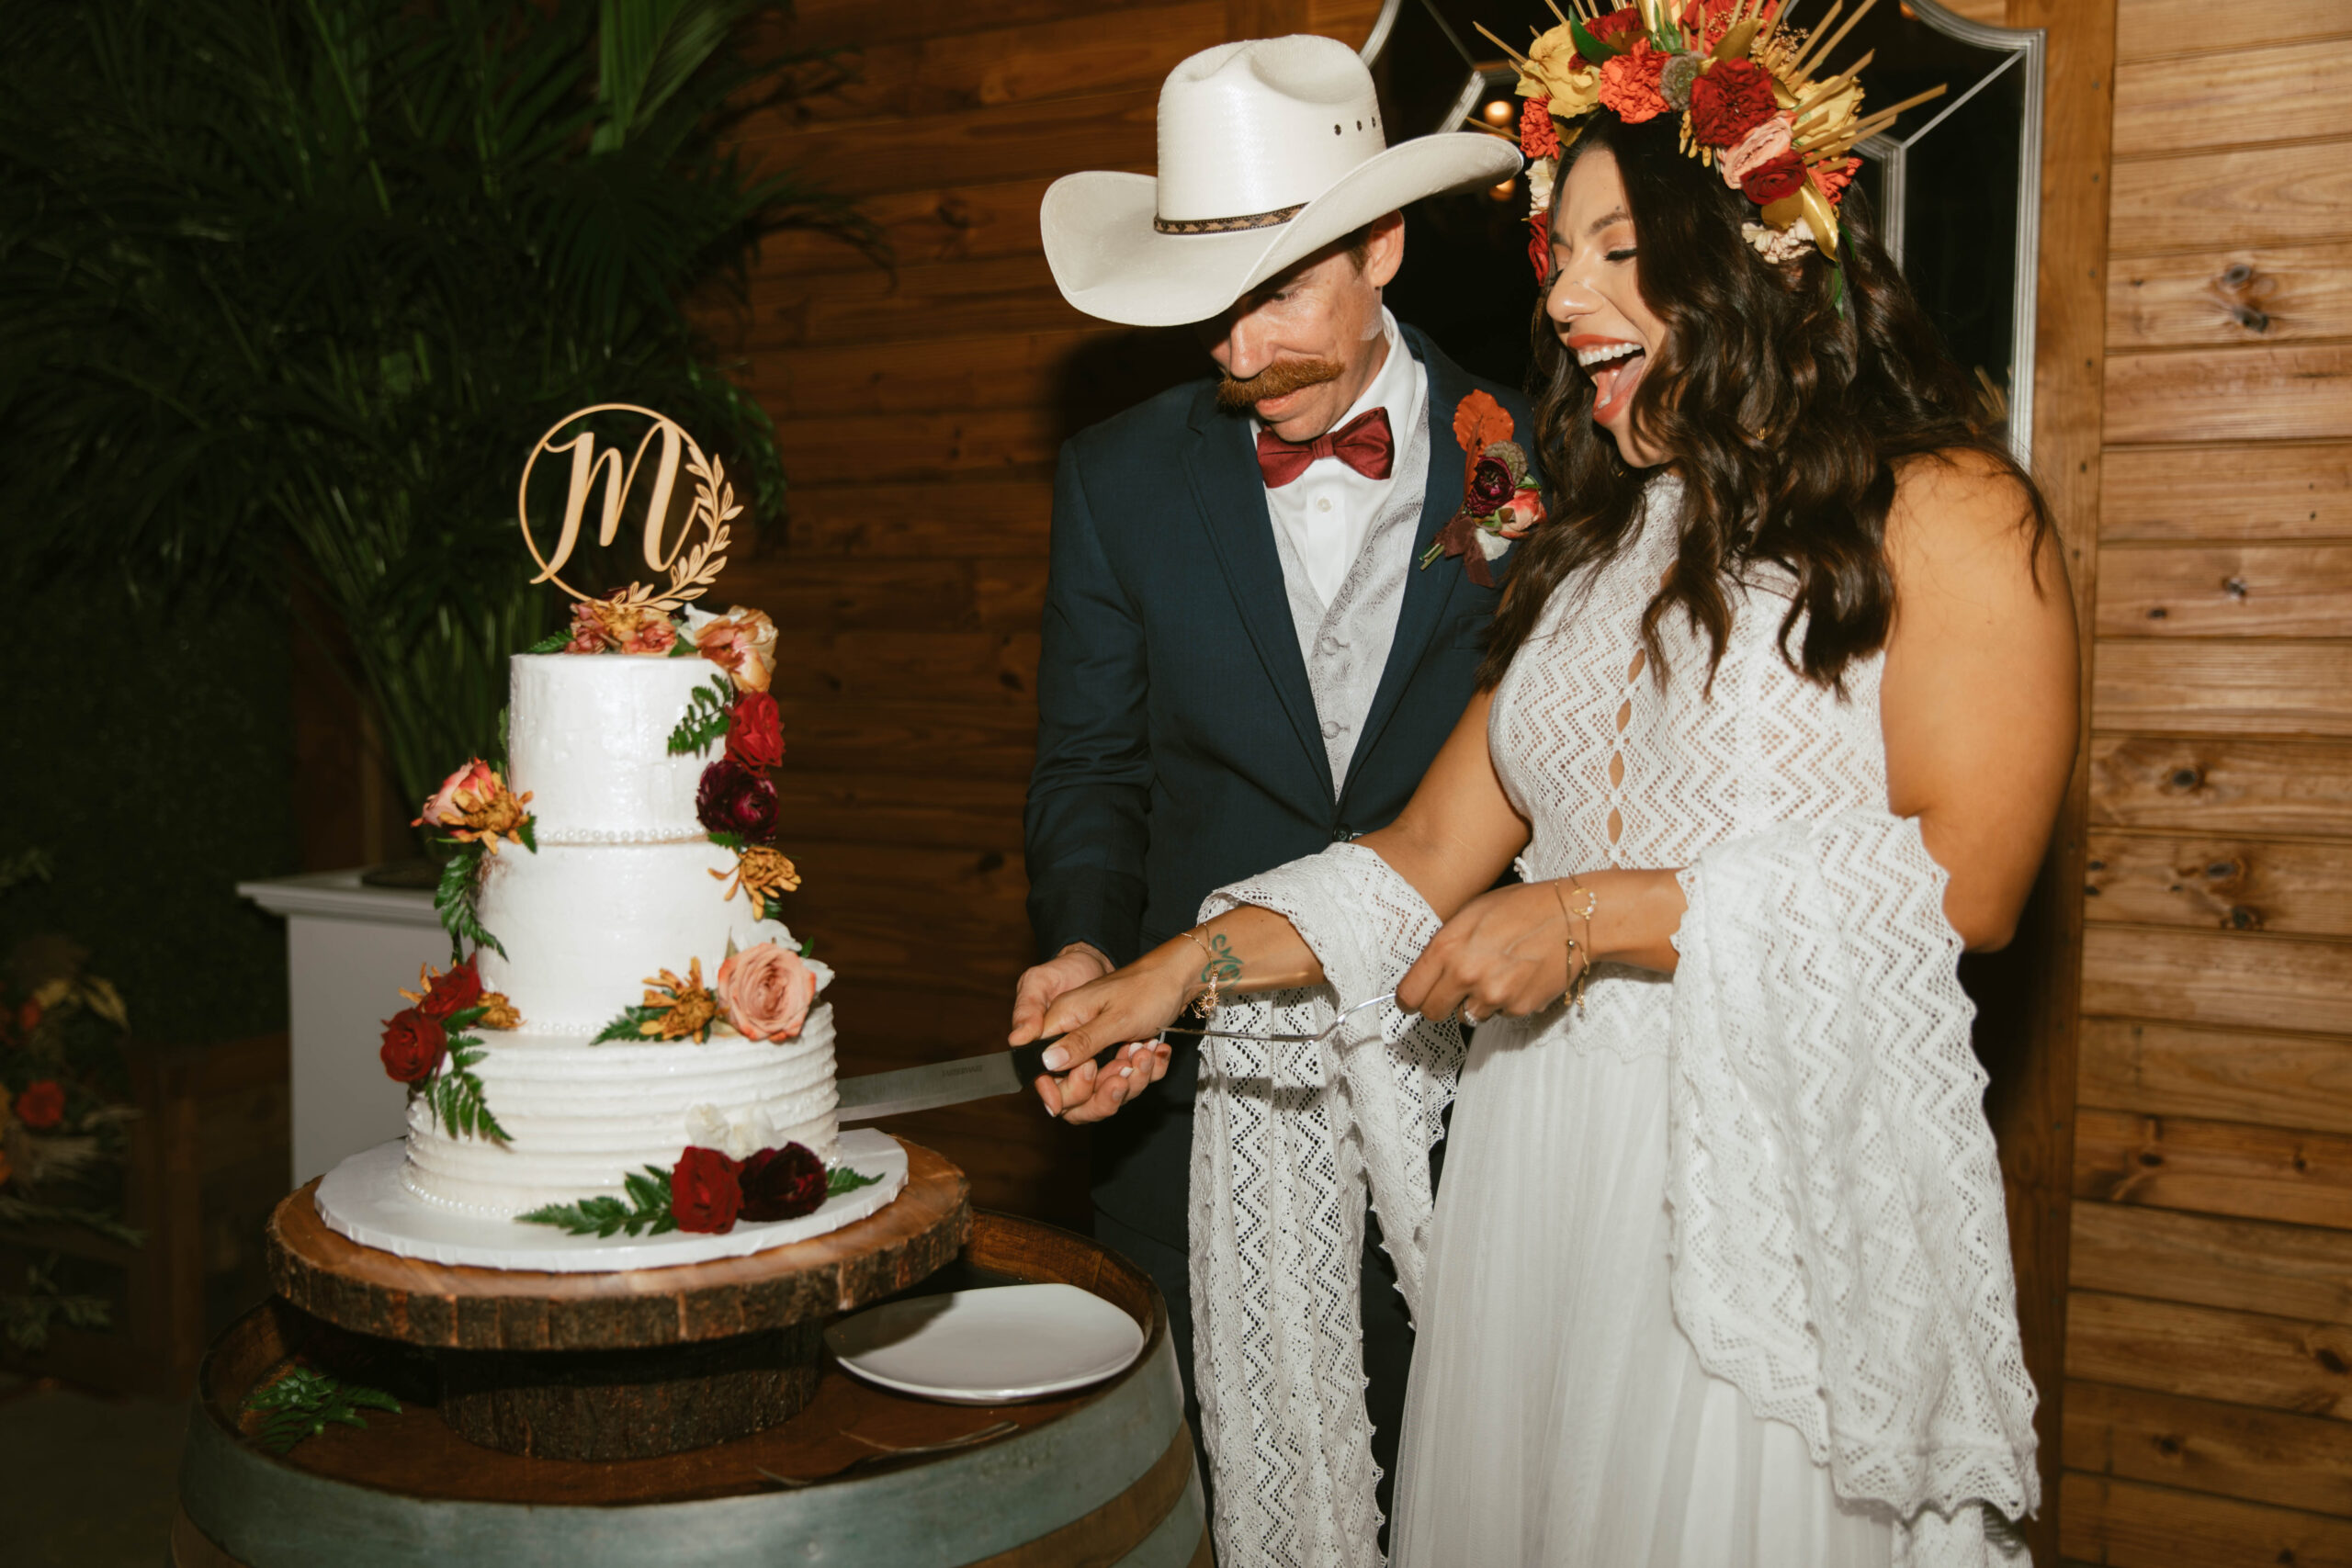 Cake-Cutting-BLB-Western-BLB-Hacienda-Wedding